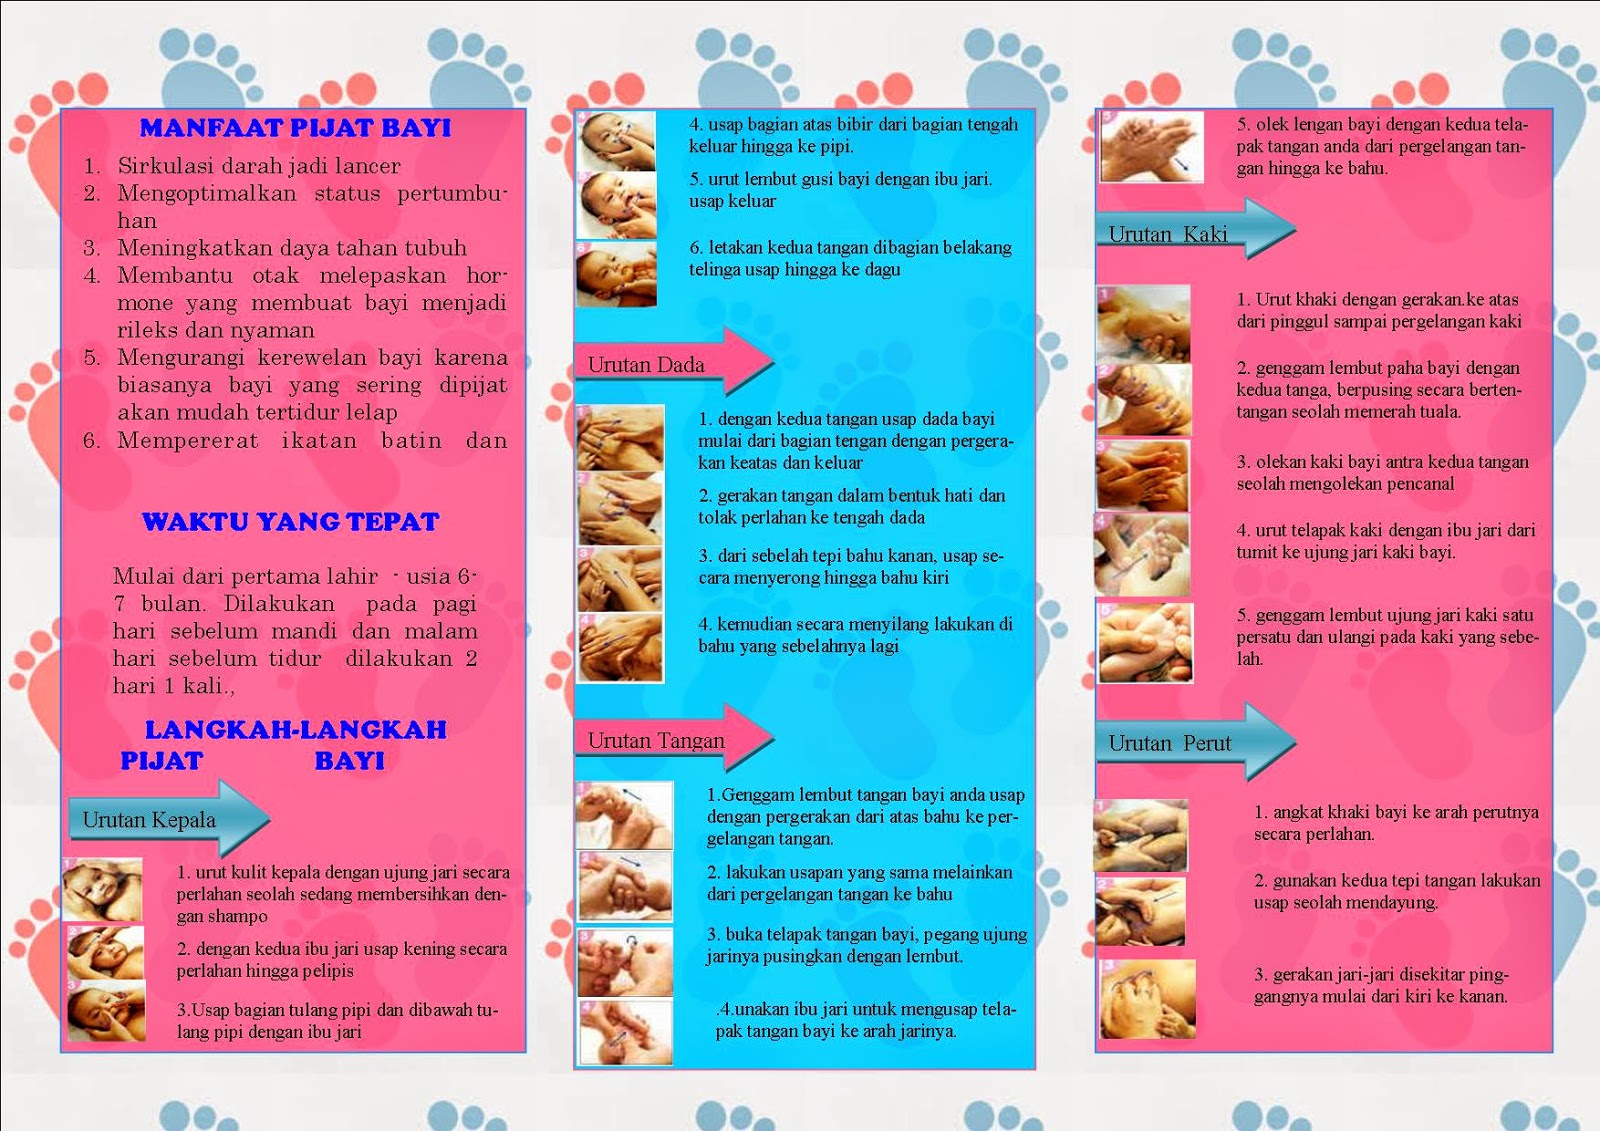 Kesehatan: contoh leaflet cara-cara pijat bayi